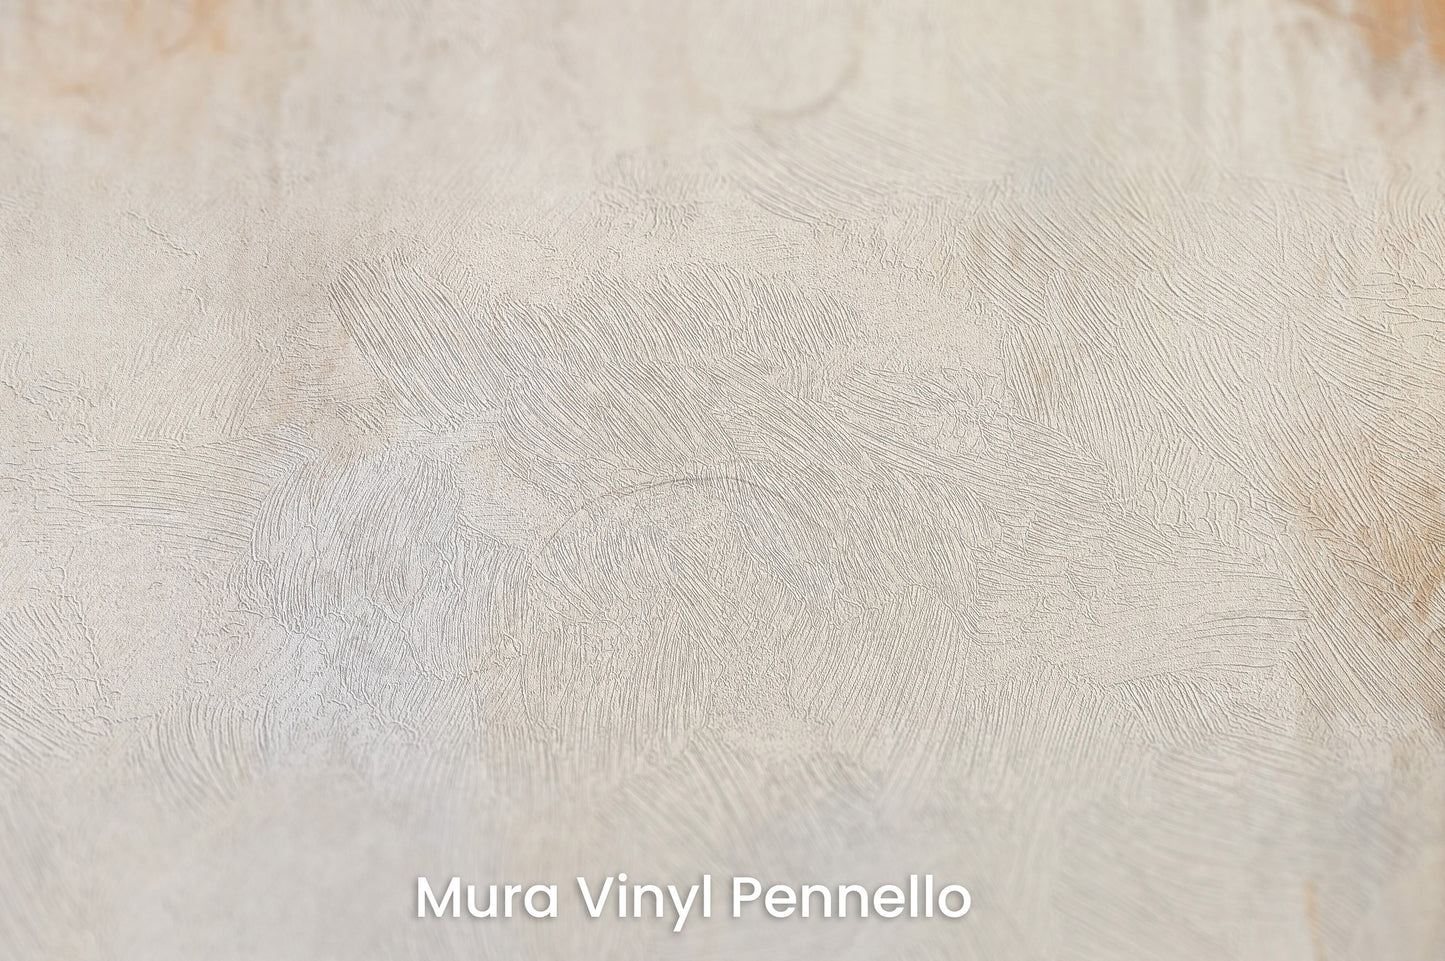 Zbliżenie na artystyczną fototapetę o nazwie ETHEREAL ECHOES ARTISTRY na podłożu Mura Vinyl Pennello - faktura pociągnięć pędzla malarskiego.